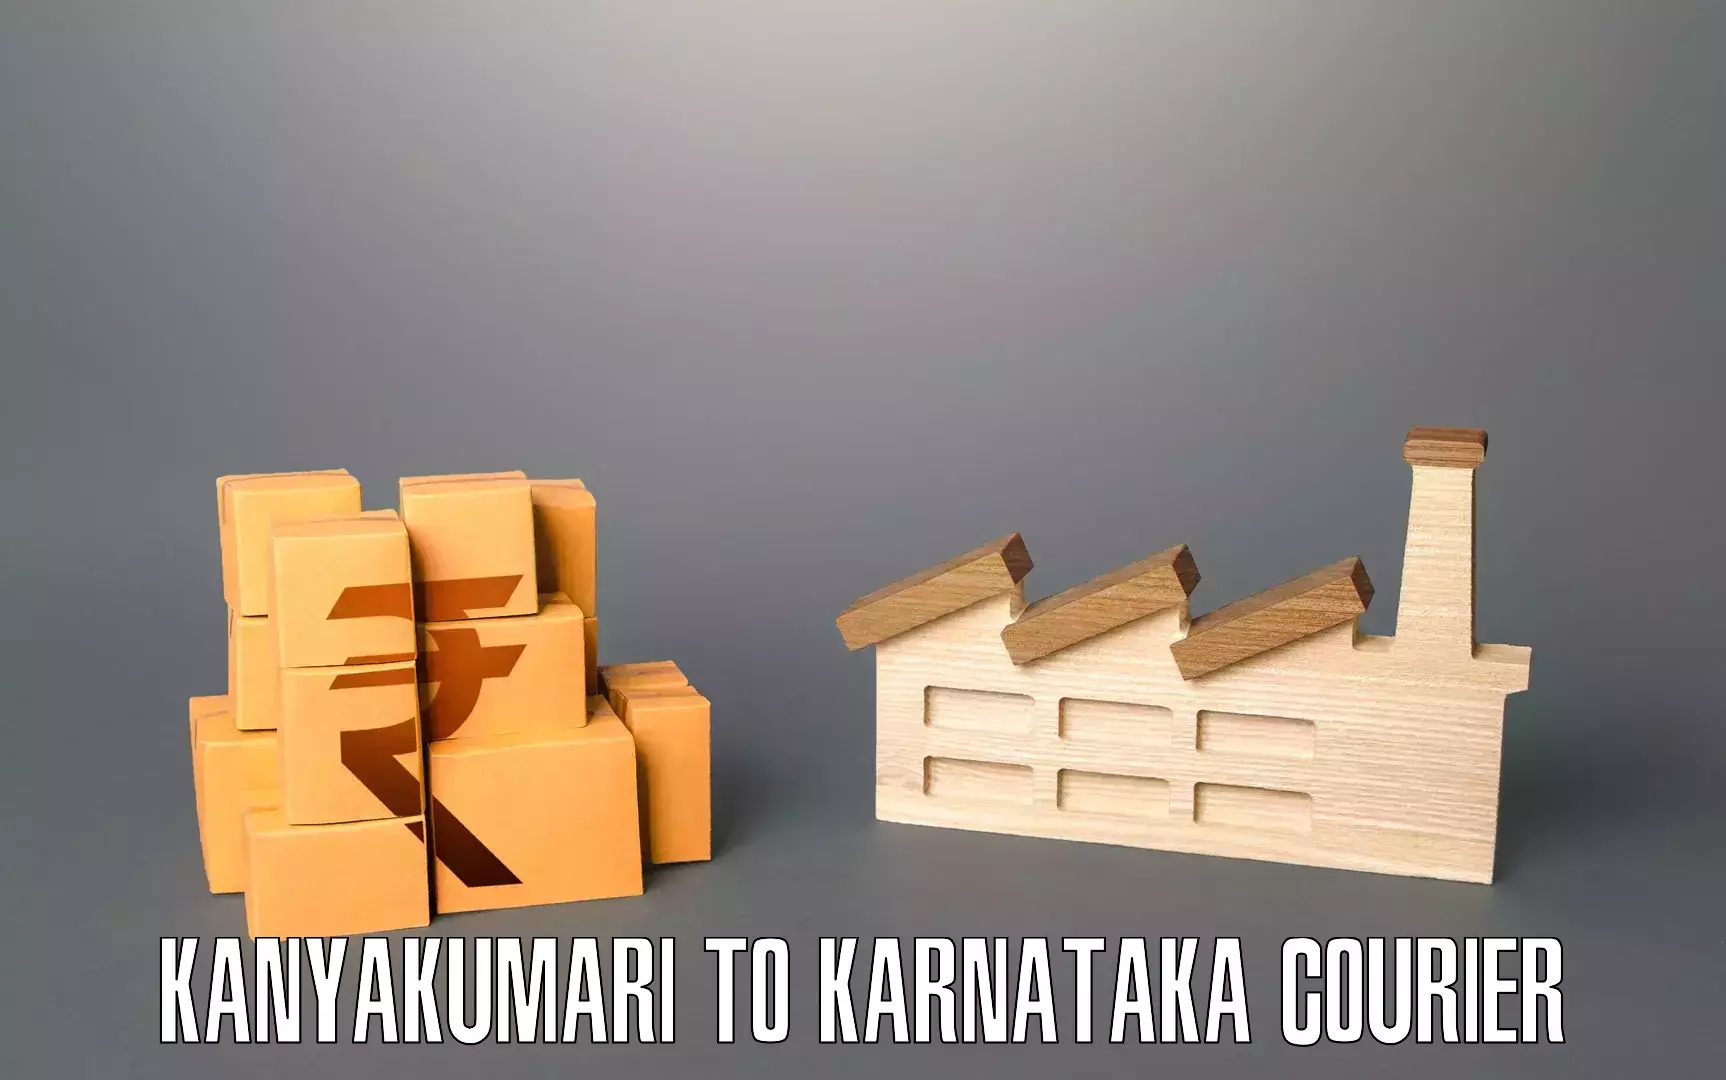 Cost-effective moving options Kanyakumari to Yenepoya Mangalore